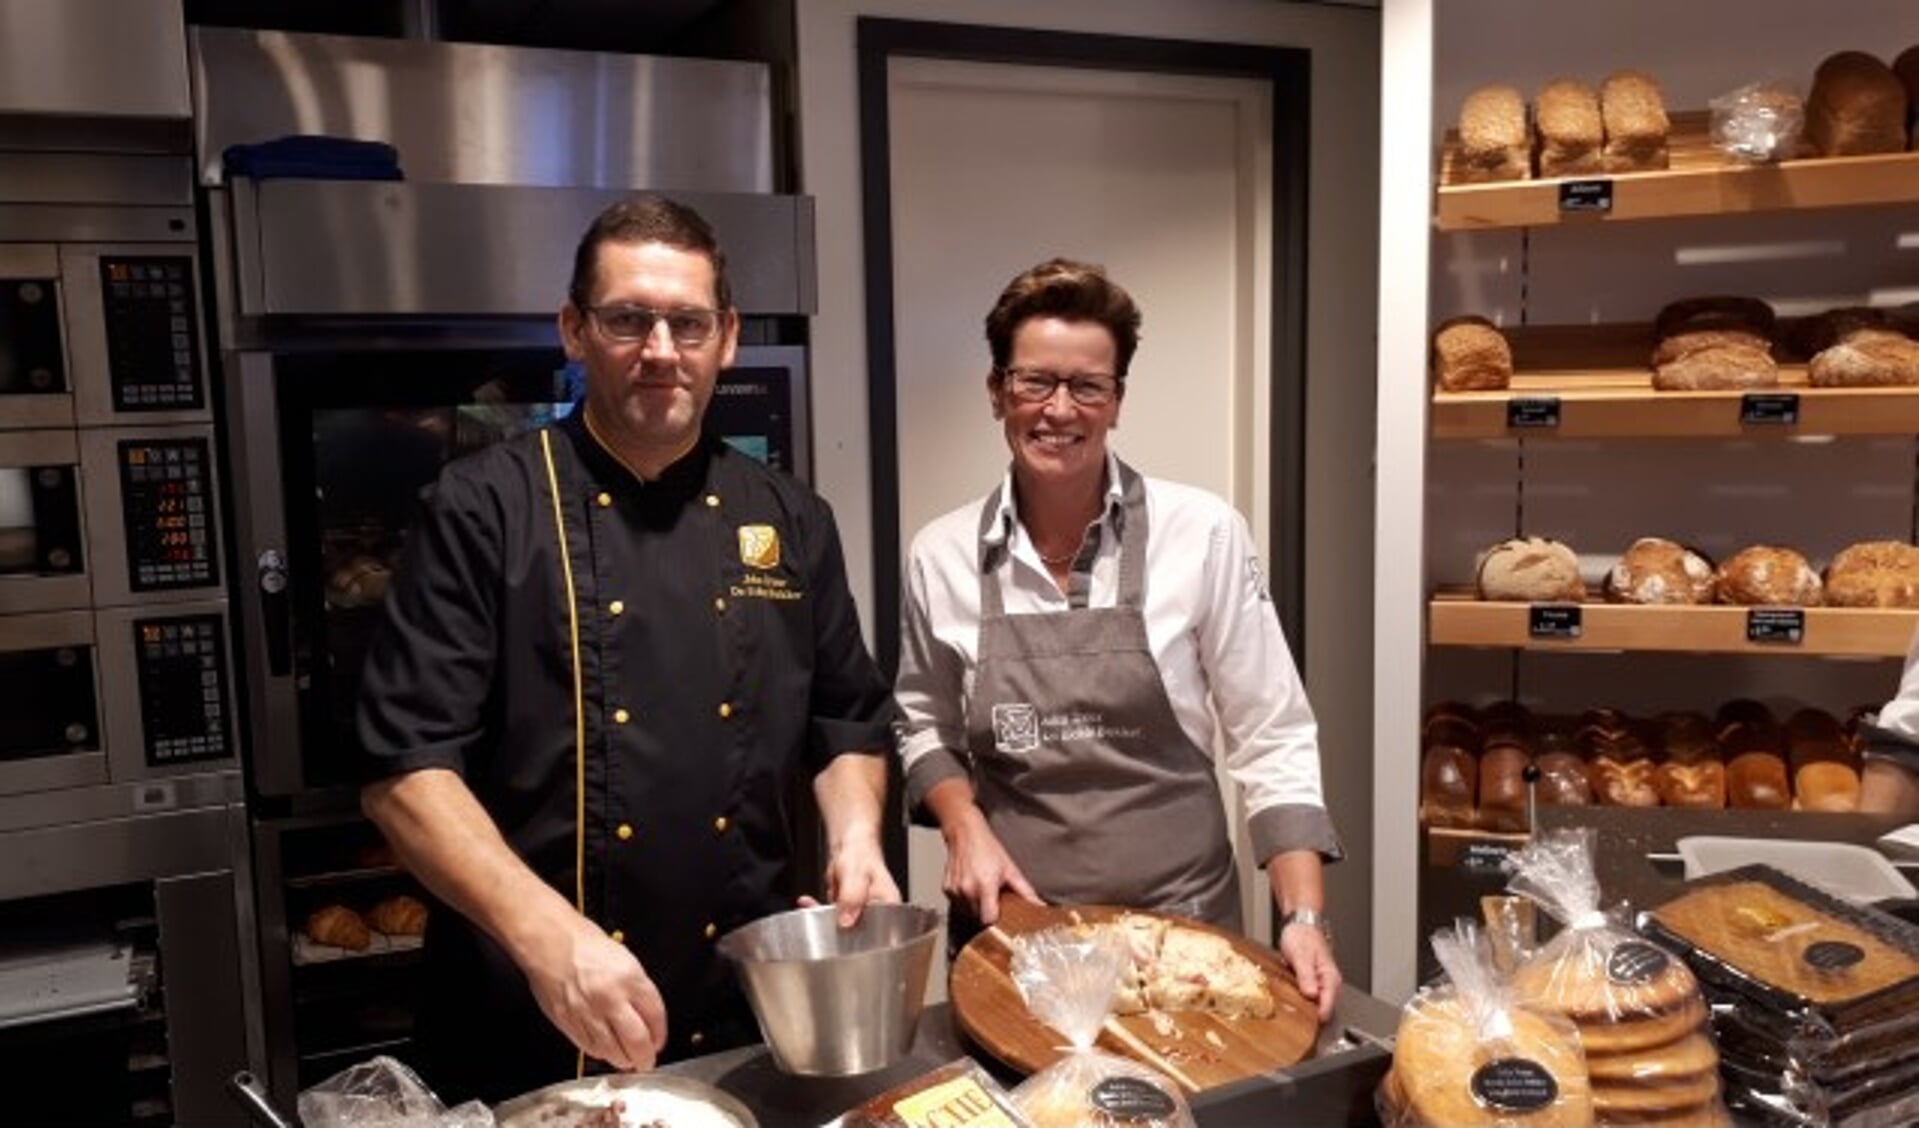 John en Paola Treur zijn inmiddels de derde generatie in de Oudewaterse bakkerij. John: 